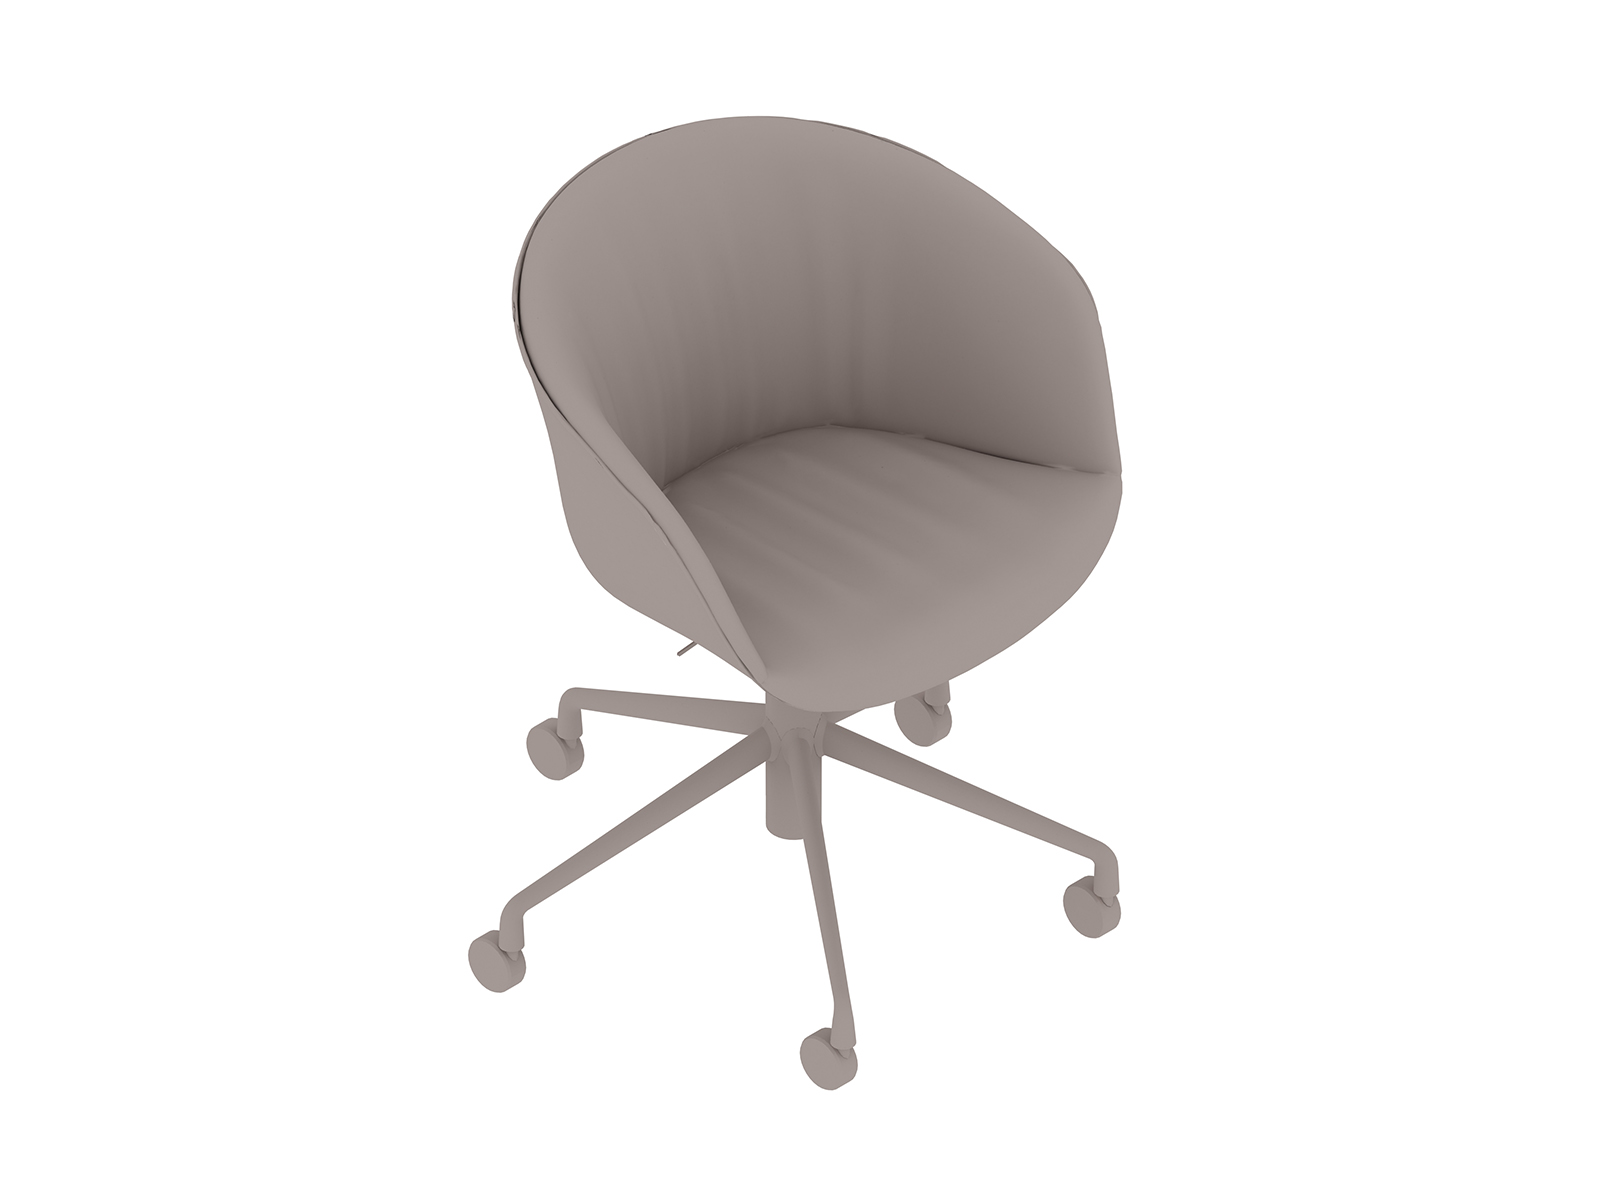 Uma renderização genérica - About A Chair, Escritório – Com braços – Base com rodízios 5 estrelas – Estofamento Soft Duo (AAC53SD)